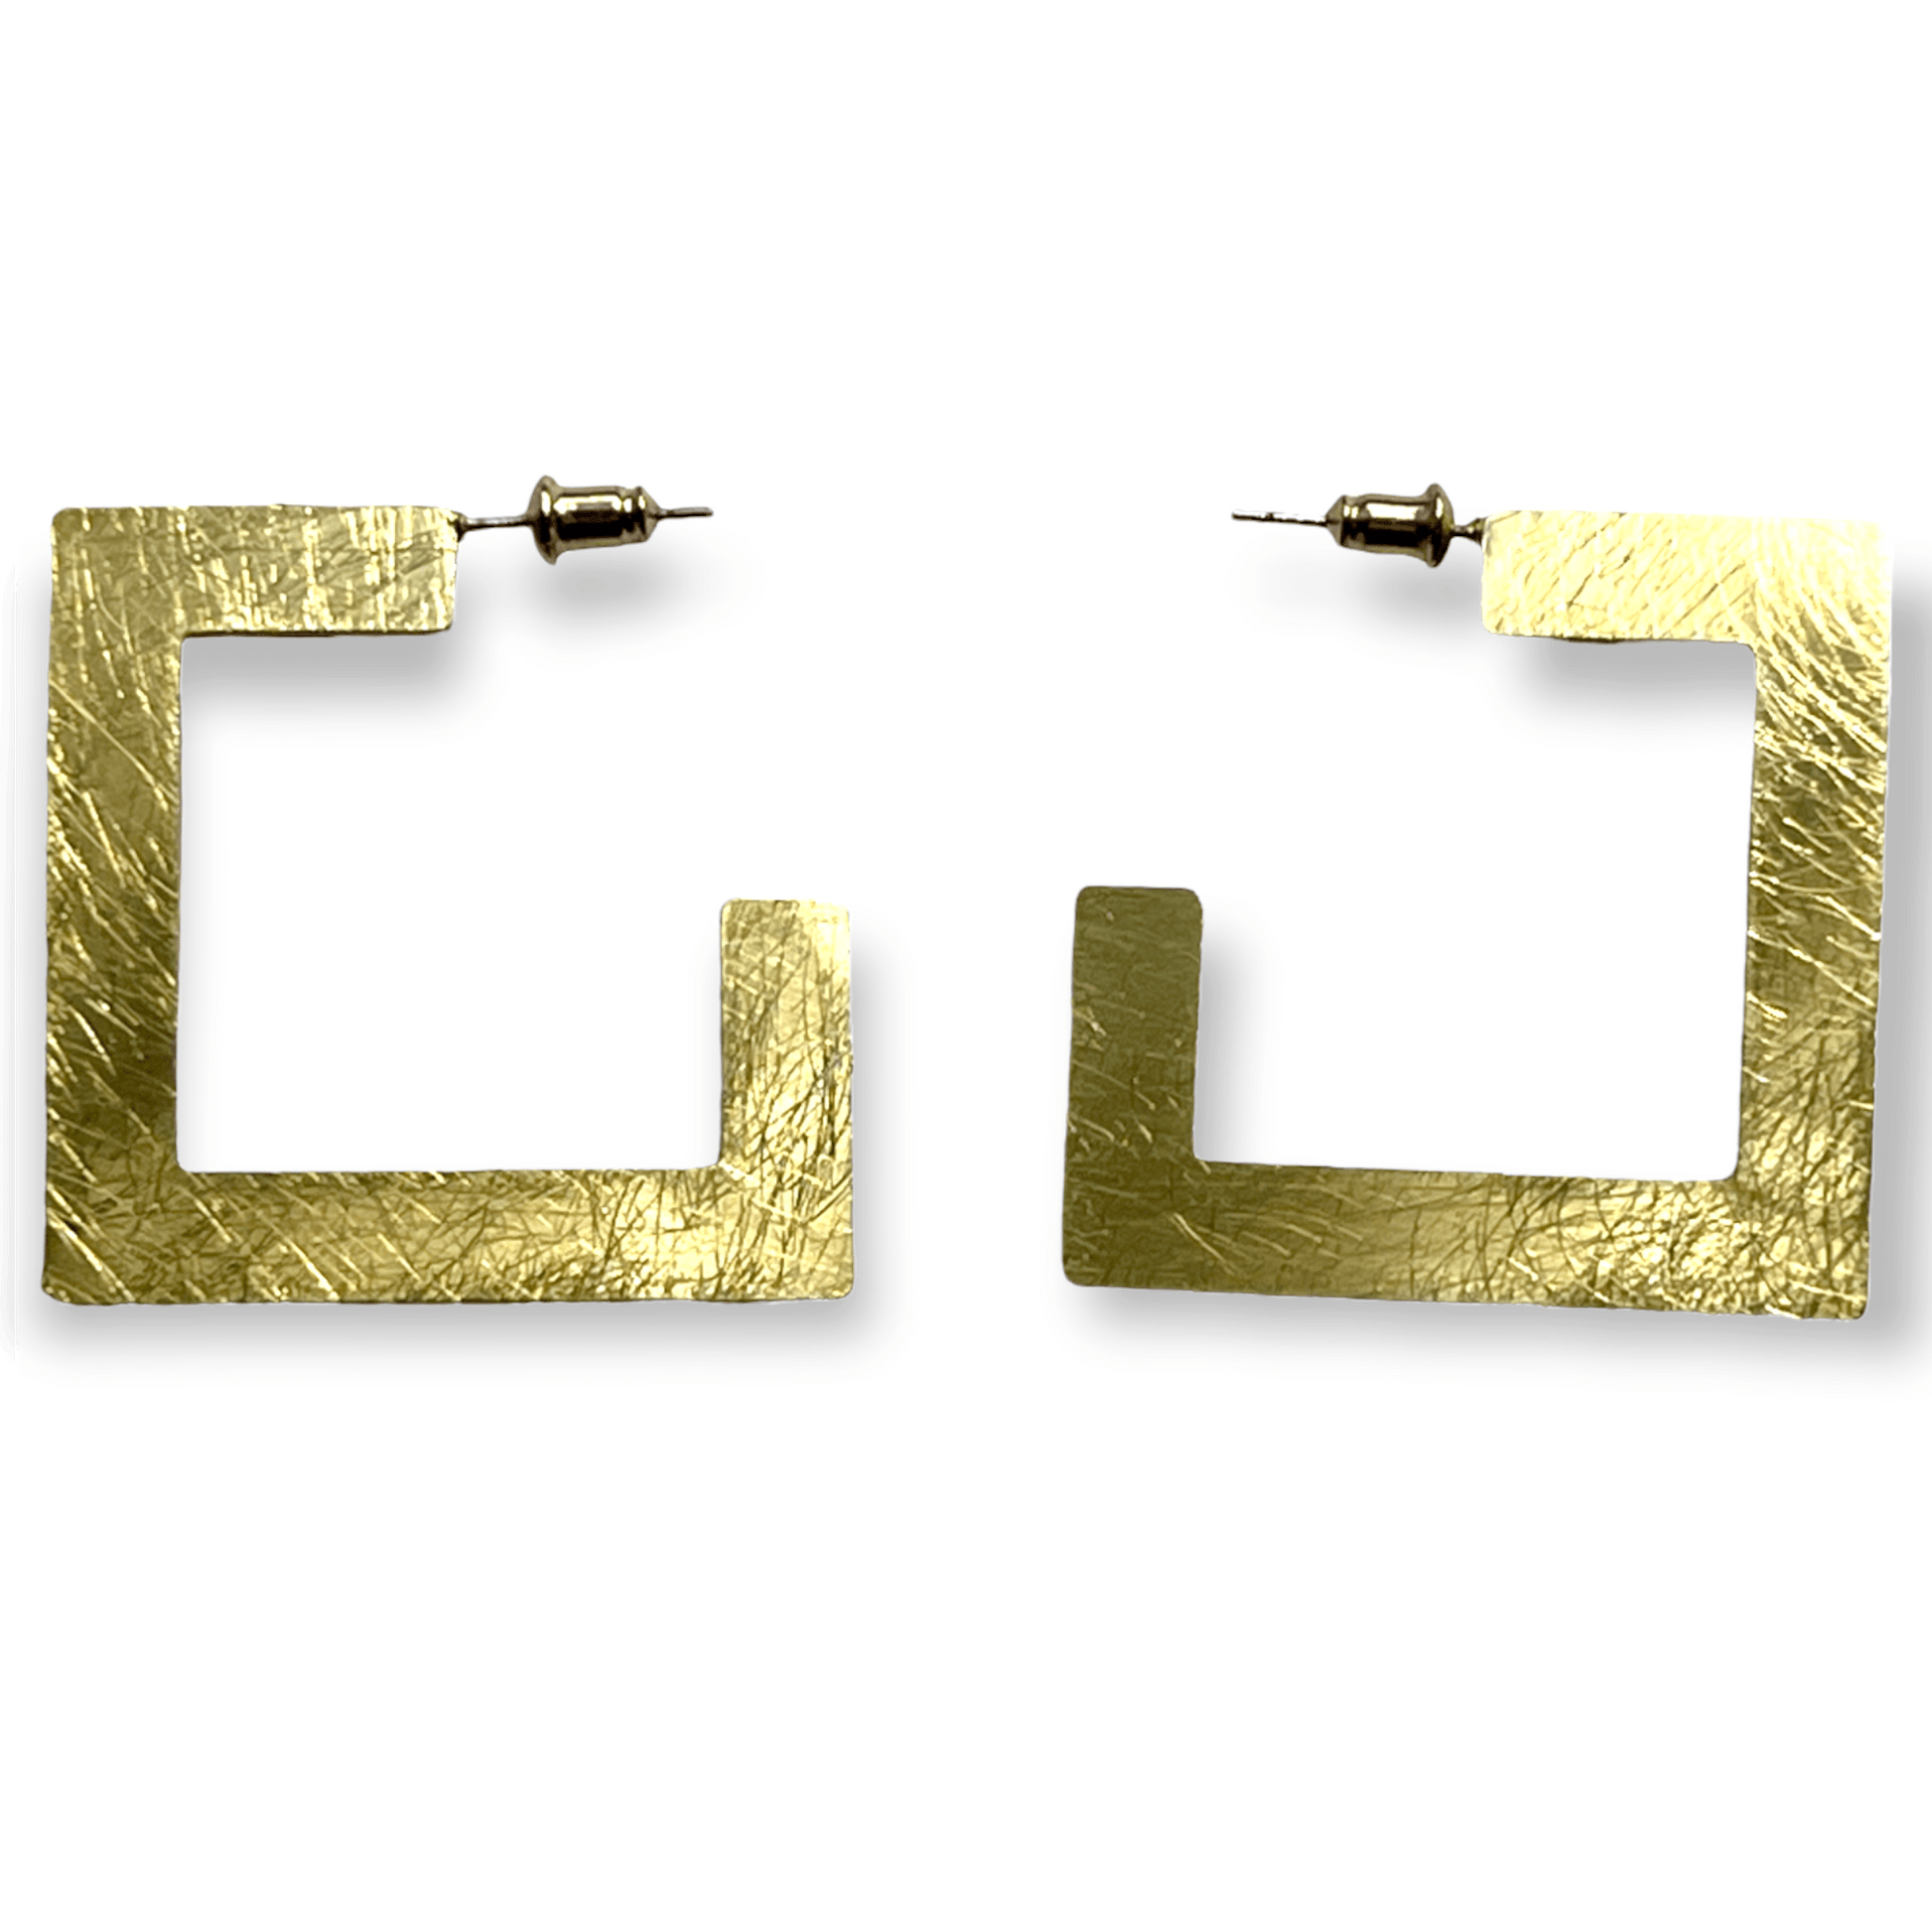 Square shaped brush drop metal earrings - Sundara Joon